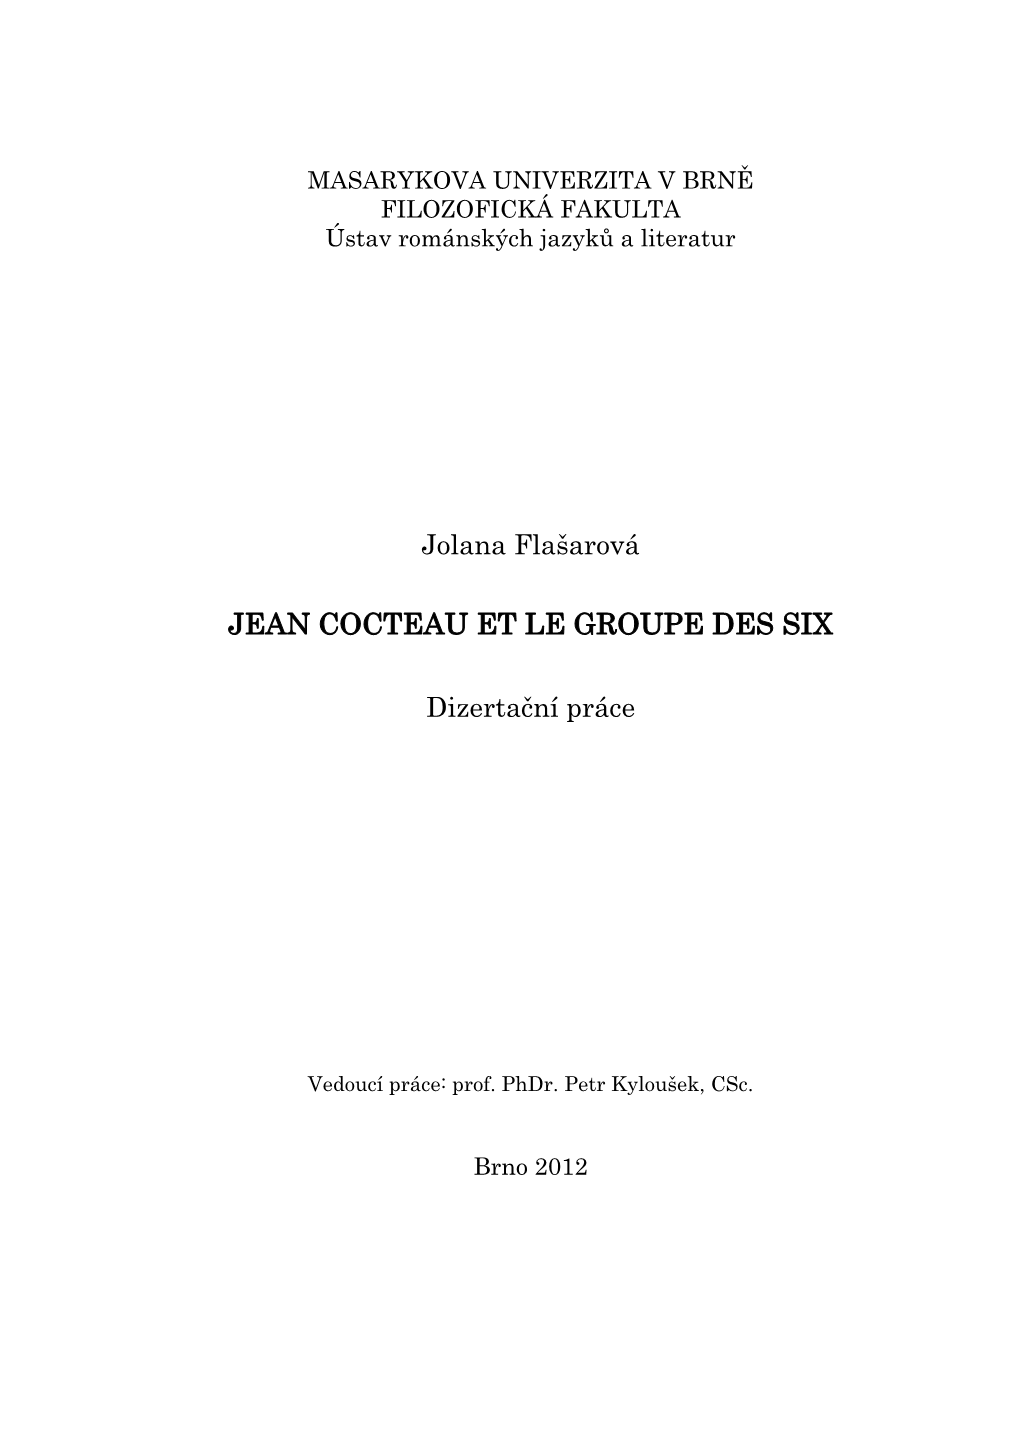 Jean Cocteau Et Le Groupe Des Six